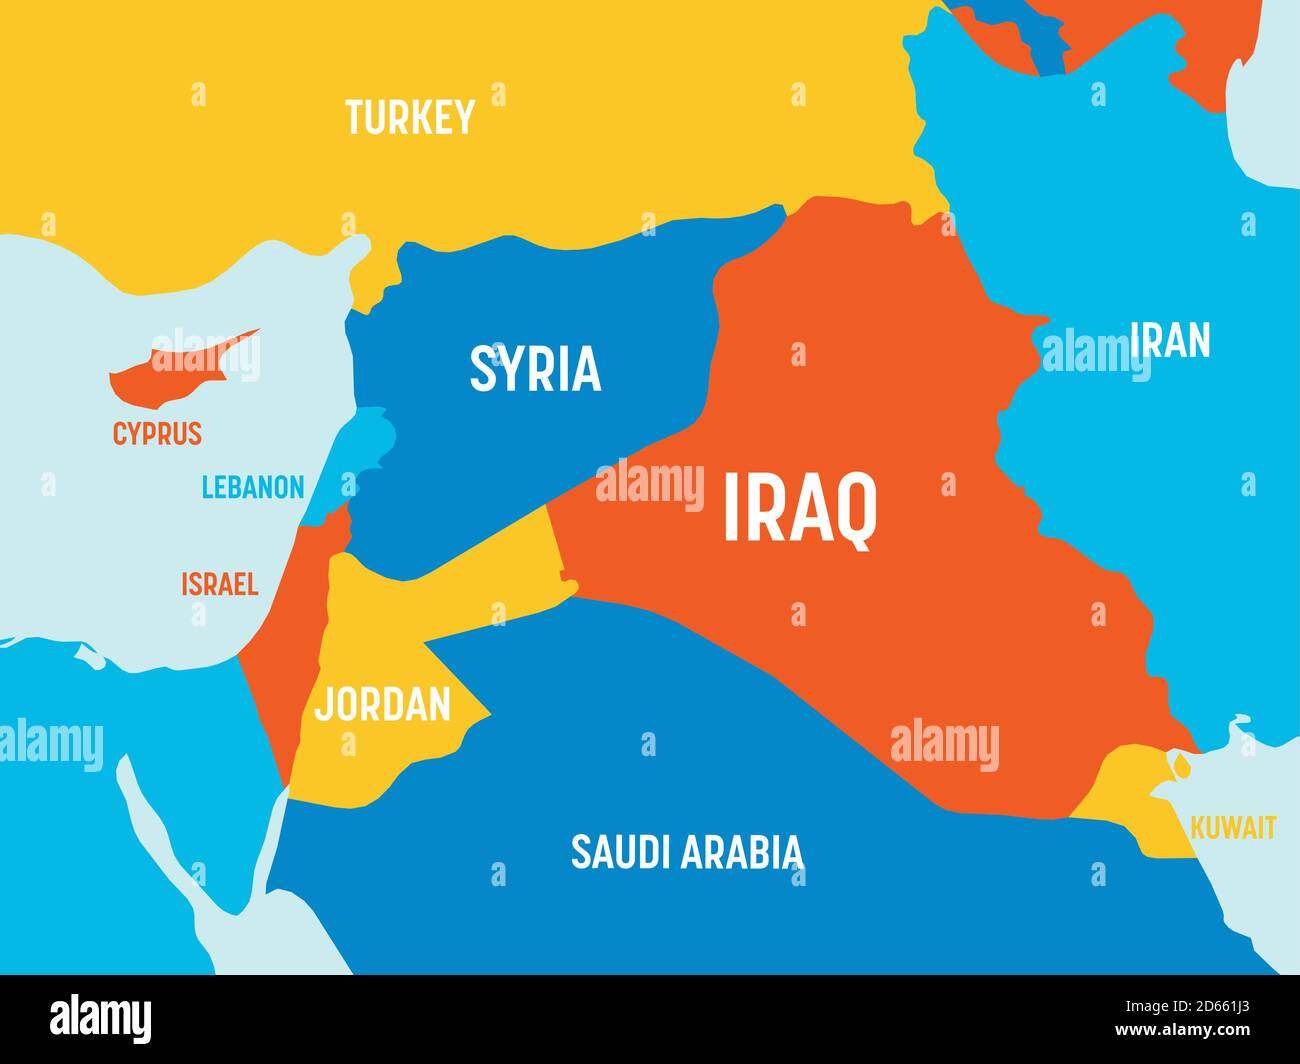 Mappa del Medio Oriente - 4 combinazioni di colori brillanti. Mappa politica dettagliata del Medio Oriente e della regione della Penisola arabica con etichettatura dei nomi di paesi, oceani e mari. Illustrazione Vettoriale